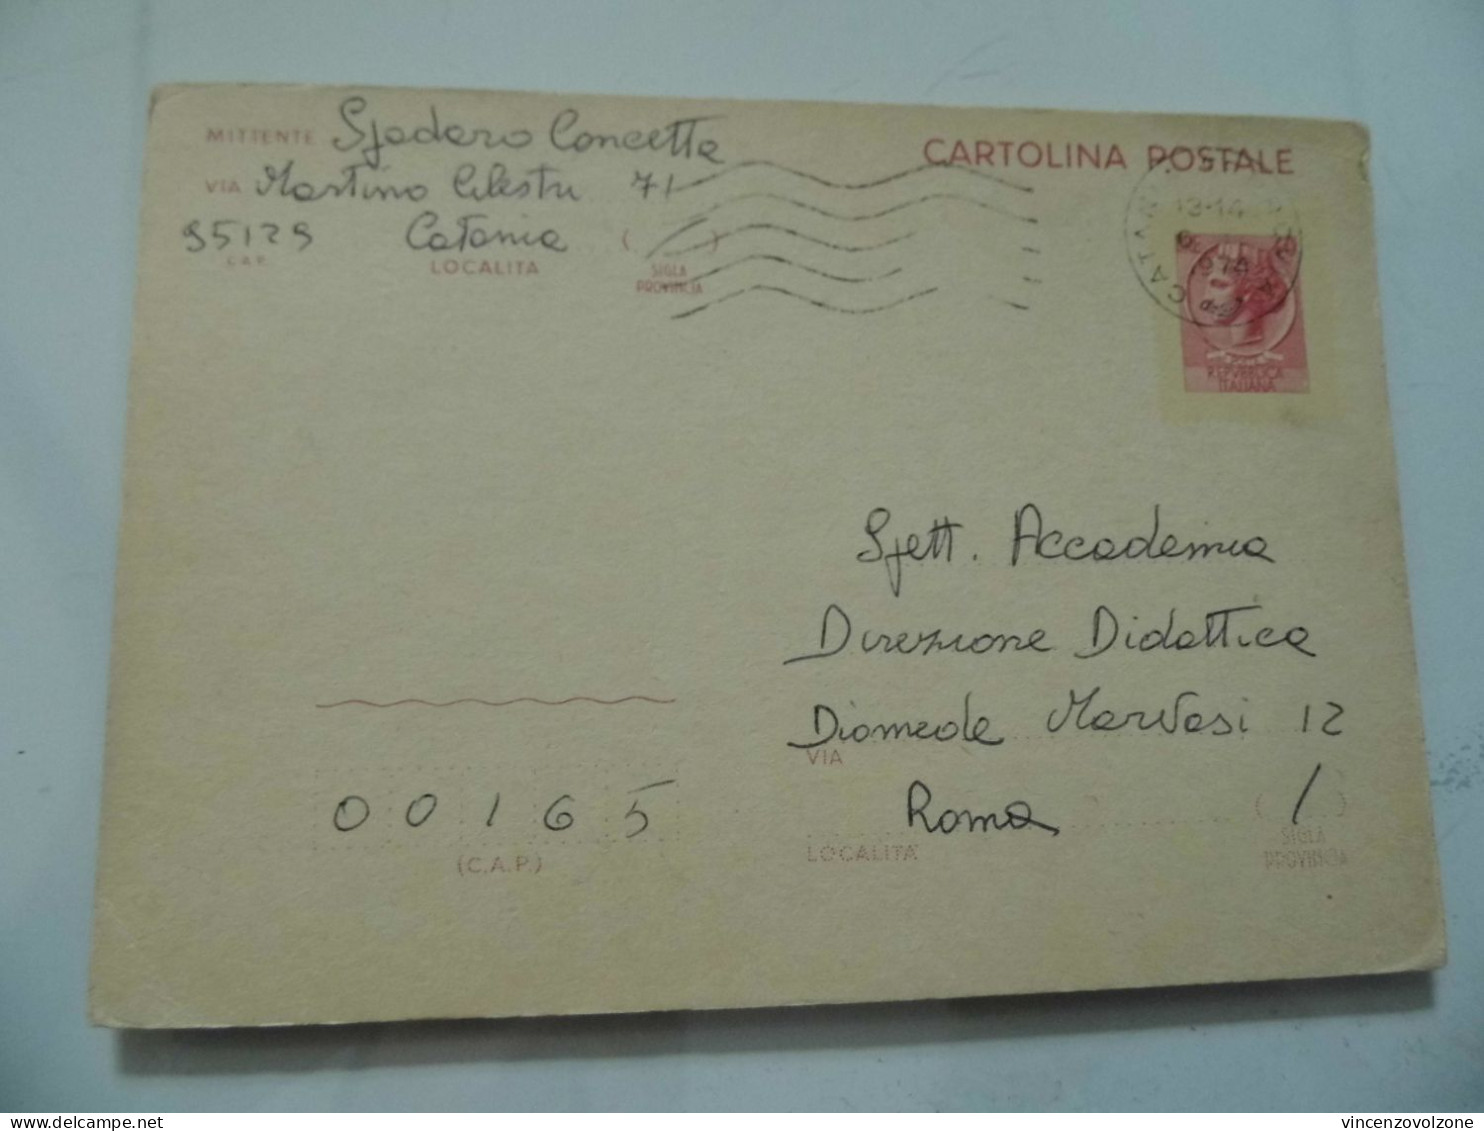 Cartolina Postale Viaggiata Da Catania A Roma "Accademia Direzione Didattica" 1974 - 1971-80: Marcophilie